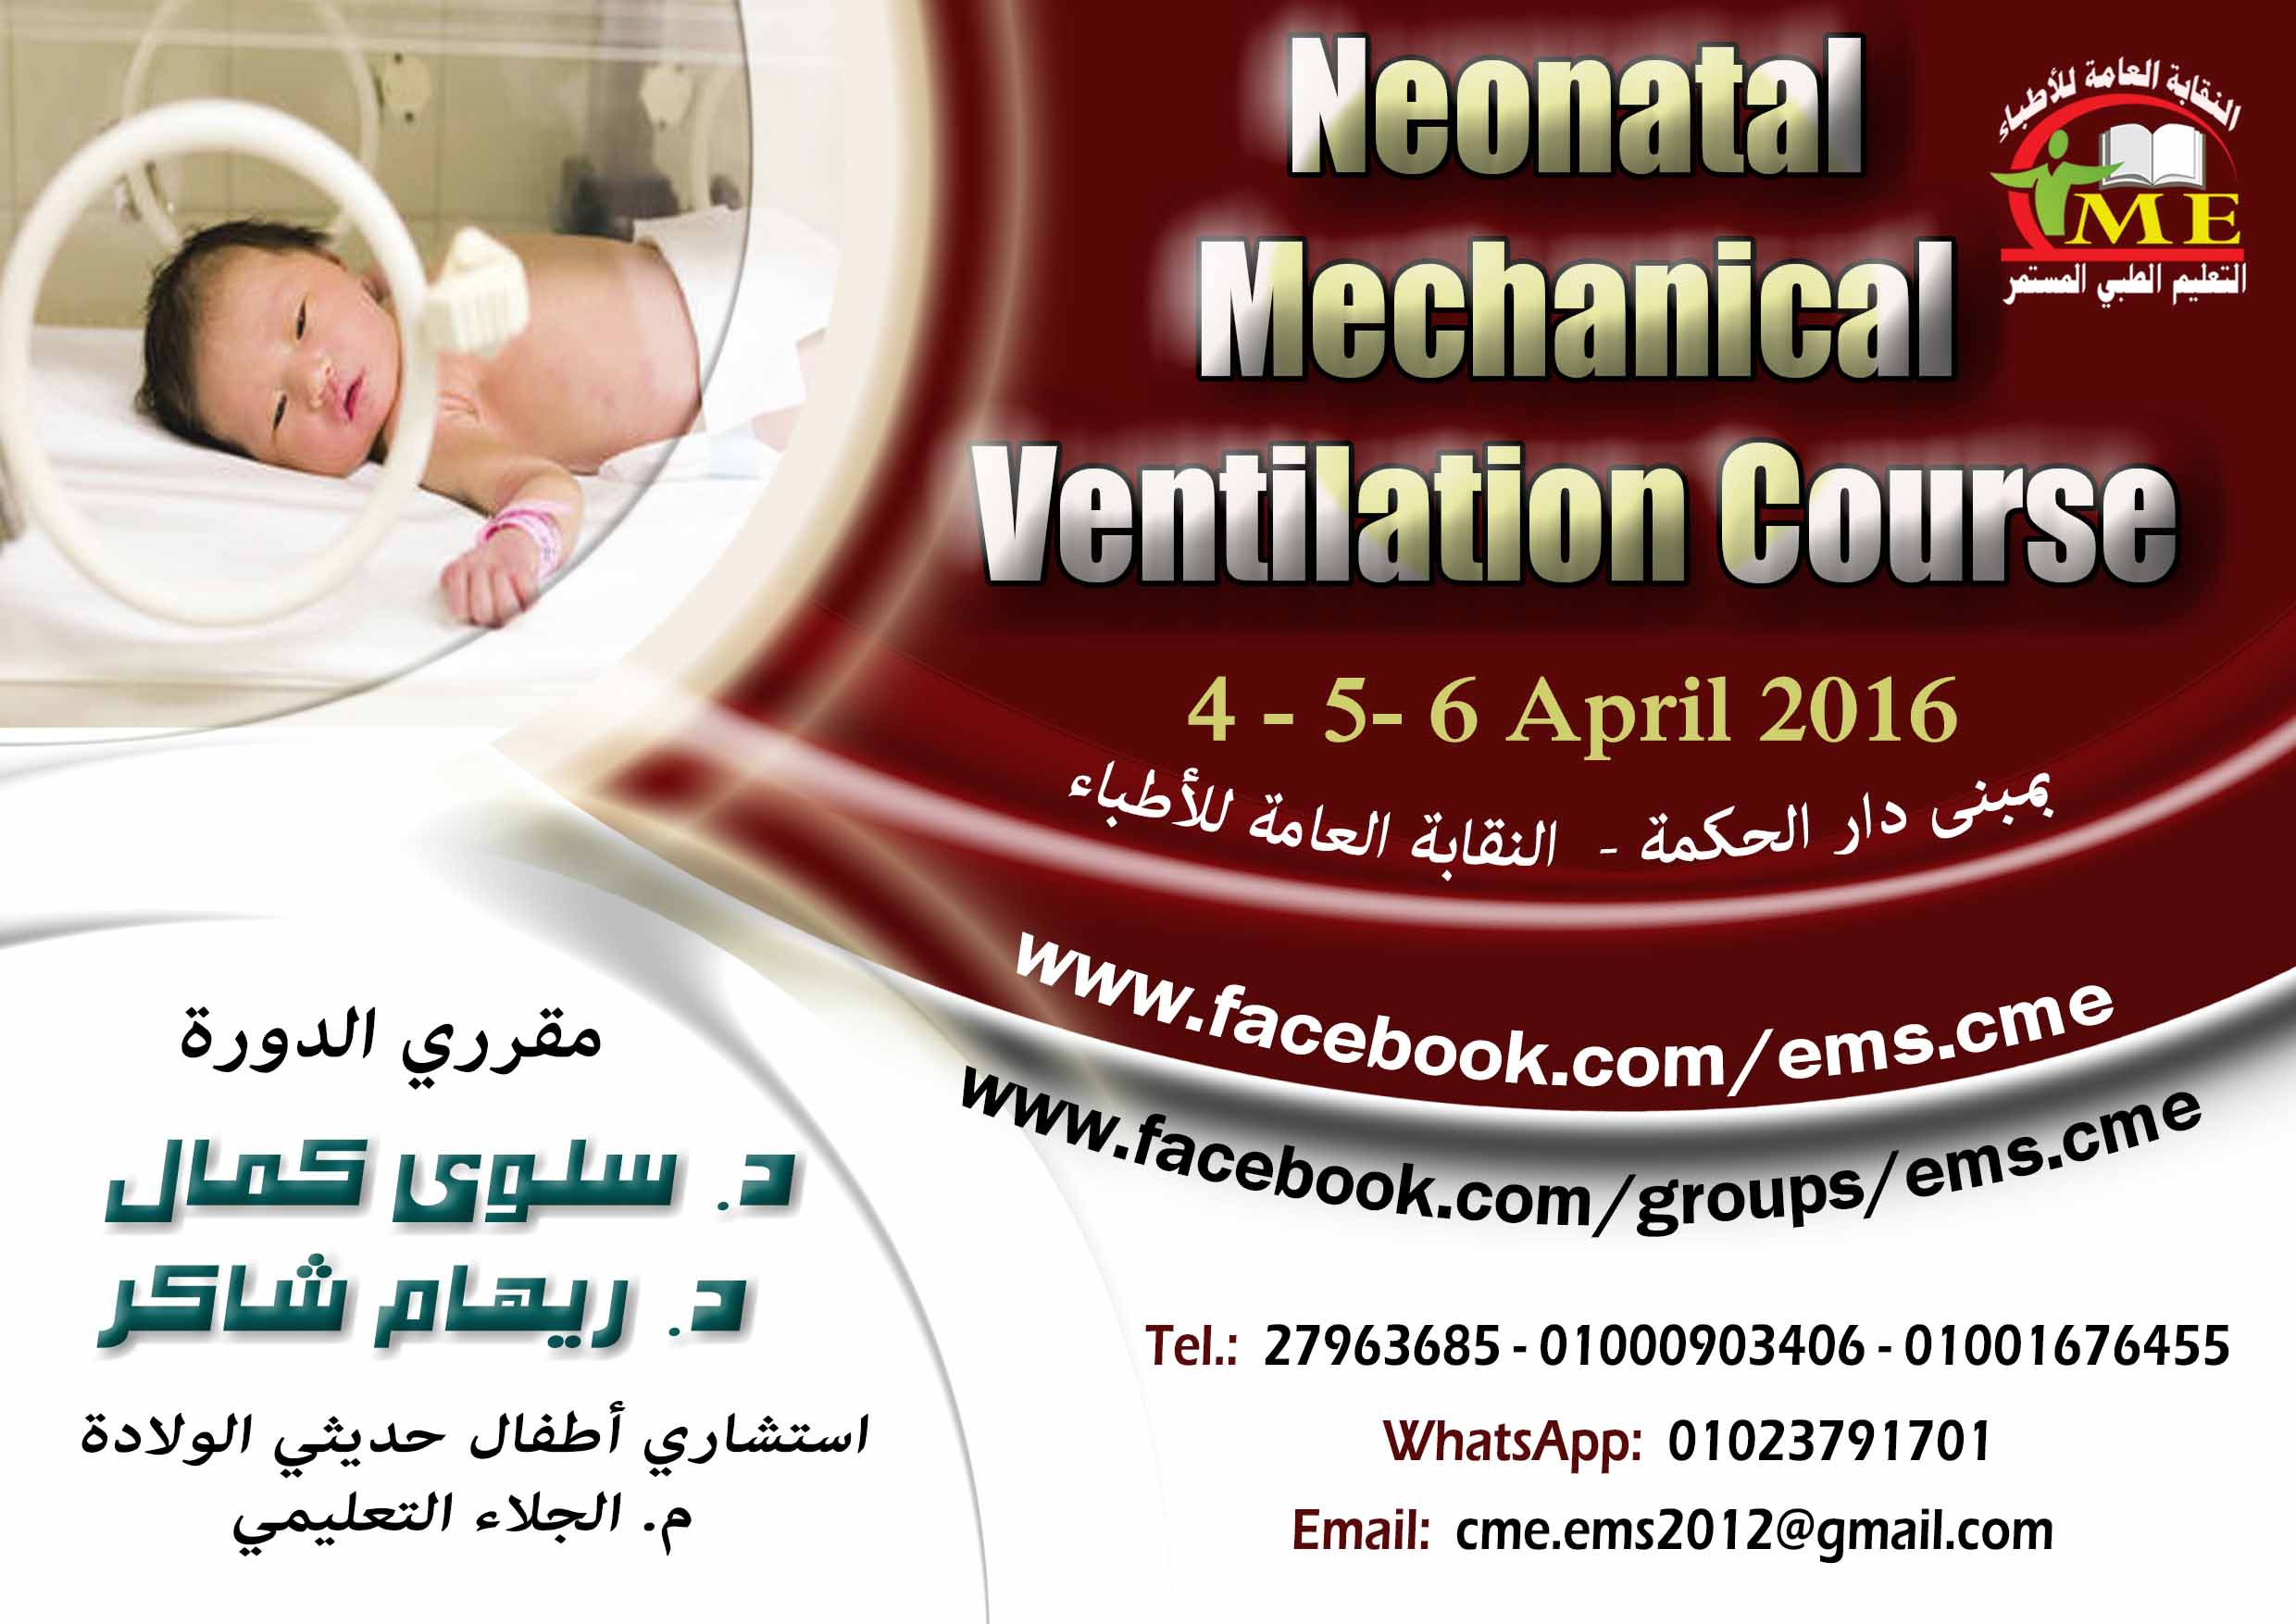 Neonatal Mechanical Ventilation Course